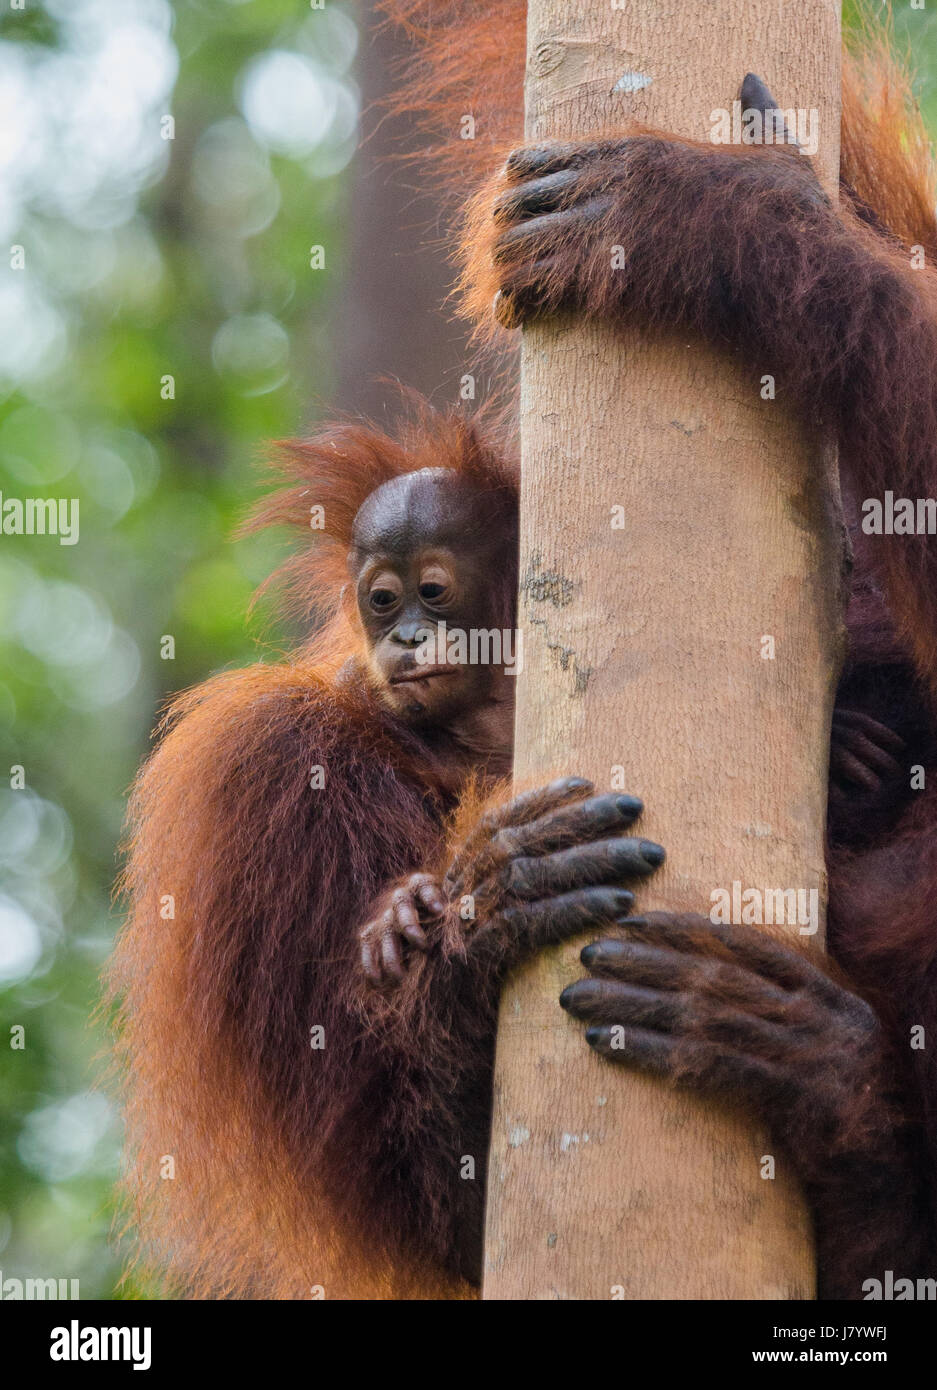 Baby orangutan close up hi-res stock photography and images - Alamy